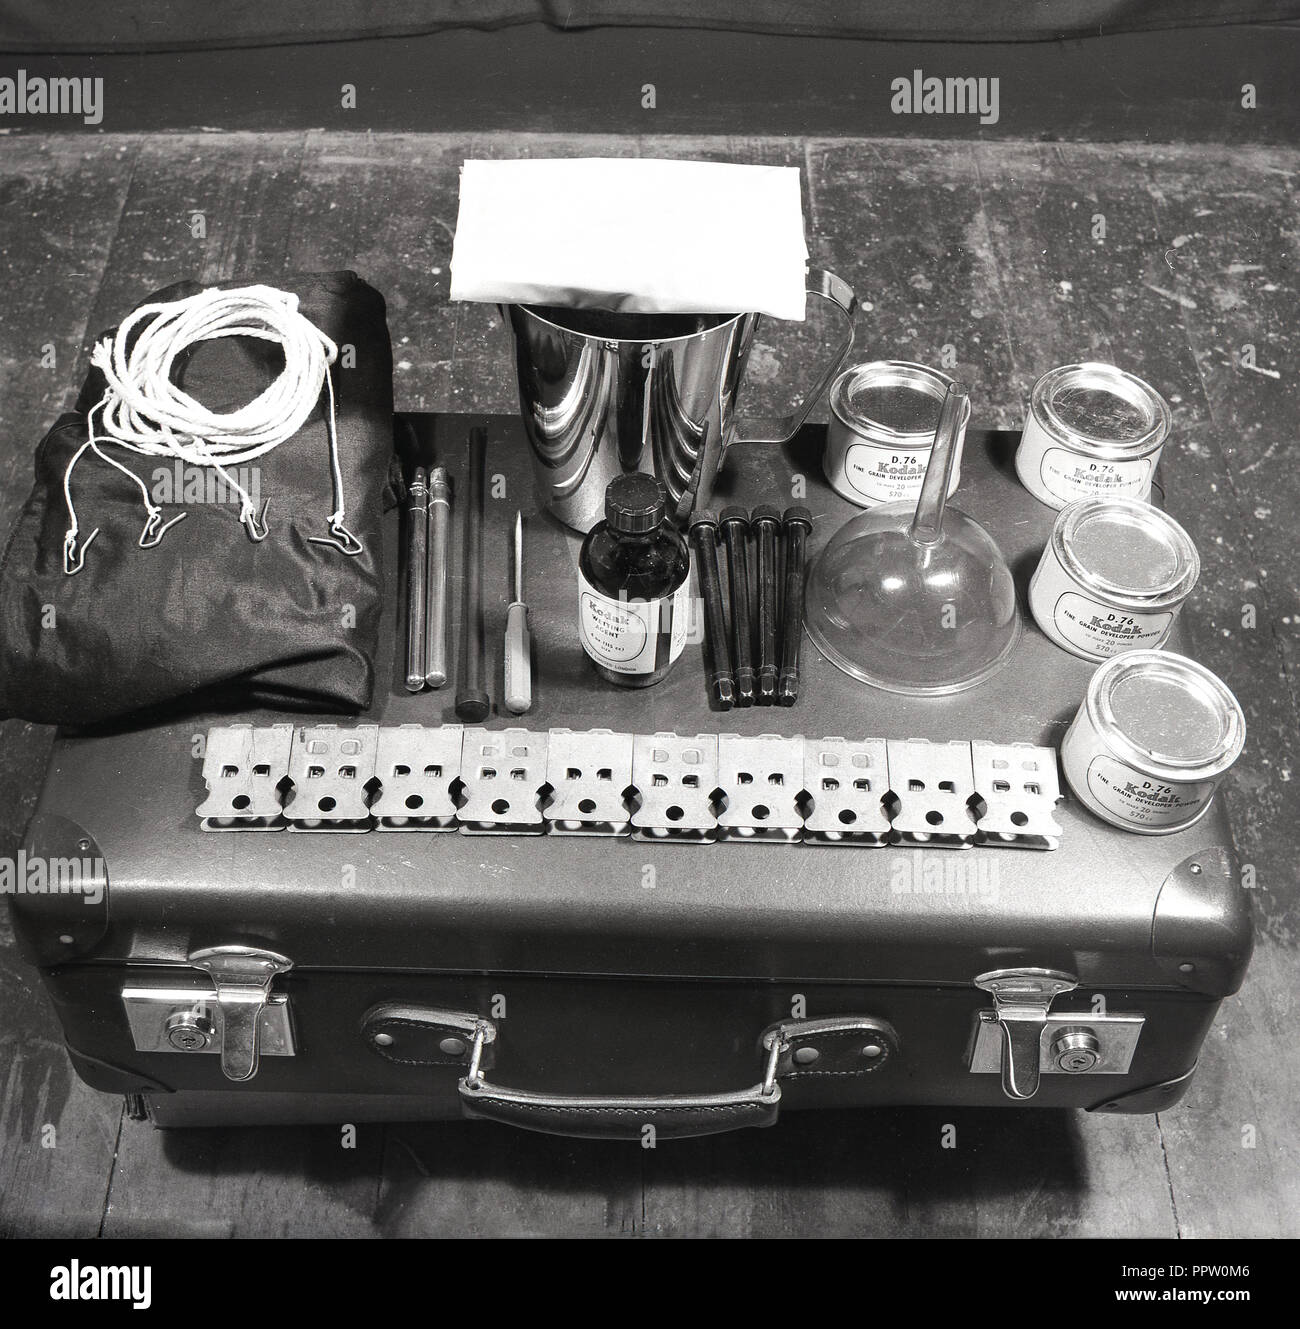 1950, película histórica, la fotografía, la imagen muestra un kit de desarrollo cinematográfico, portátiles, con el equipo necesario, incluido el agente humectante, desarrollador de grano de polvo para elaborar rollos de película. Foto de stock